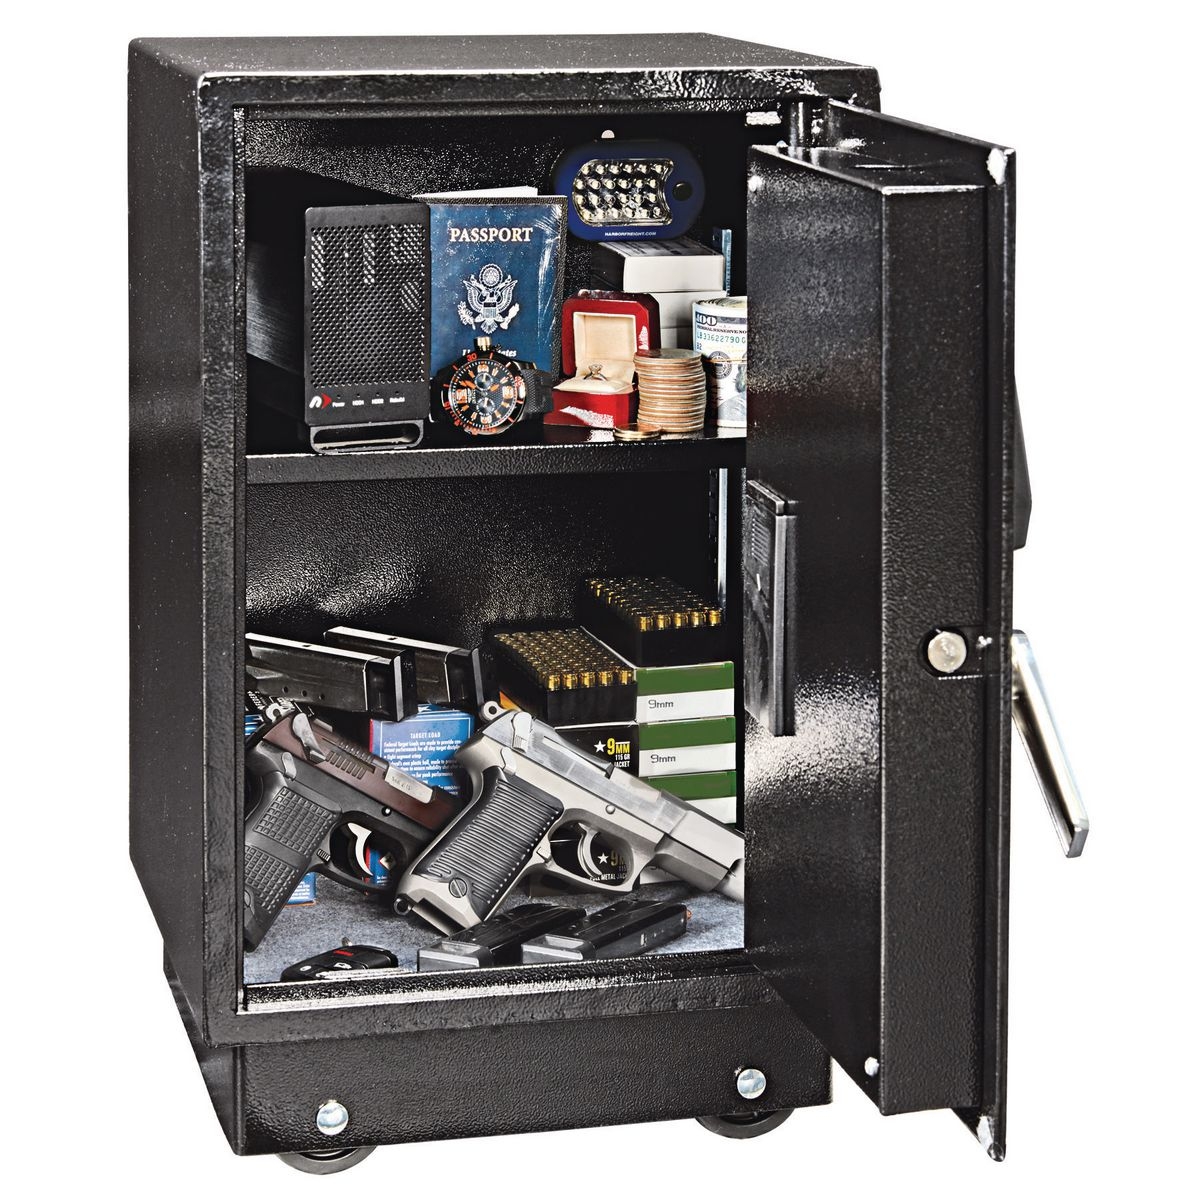 UNION SAFE COMPANY 1.51 cu. ft. Electronic Lock Gun Floor Safe - Item 64009 / 64010